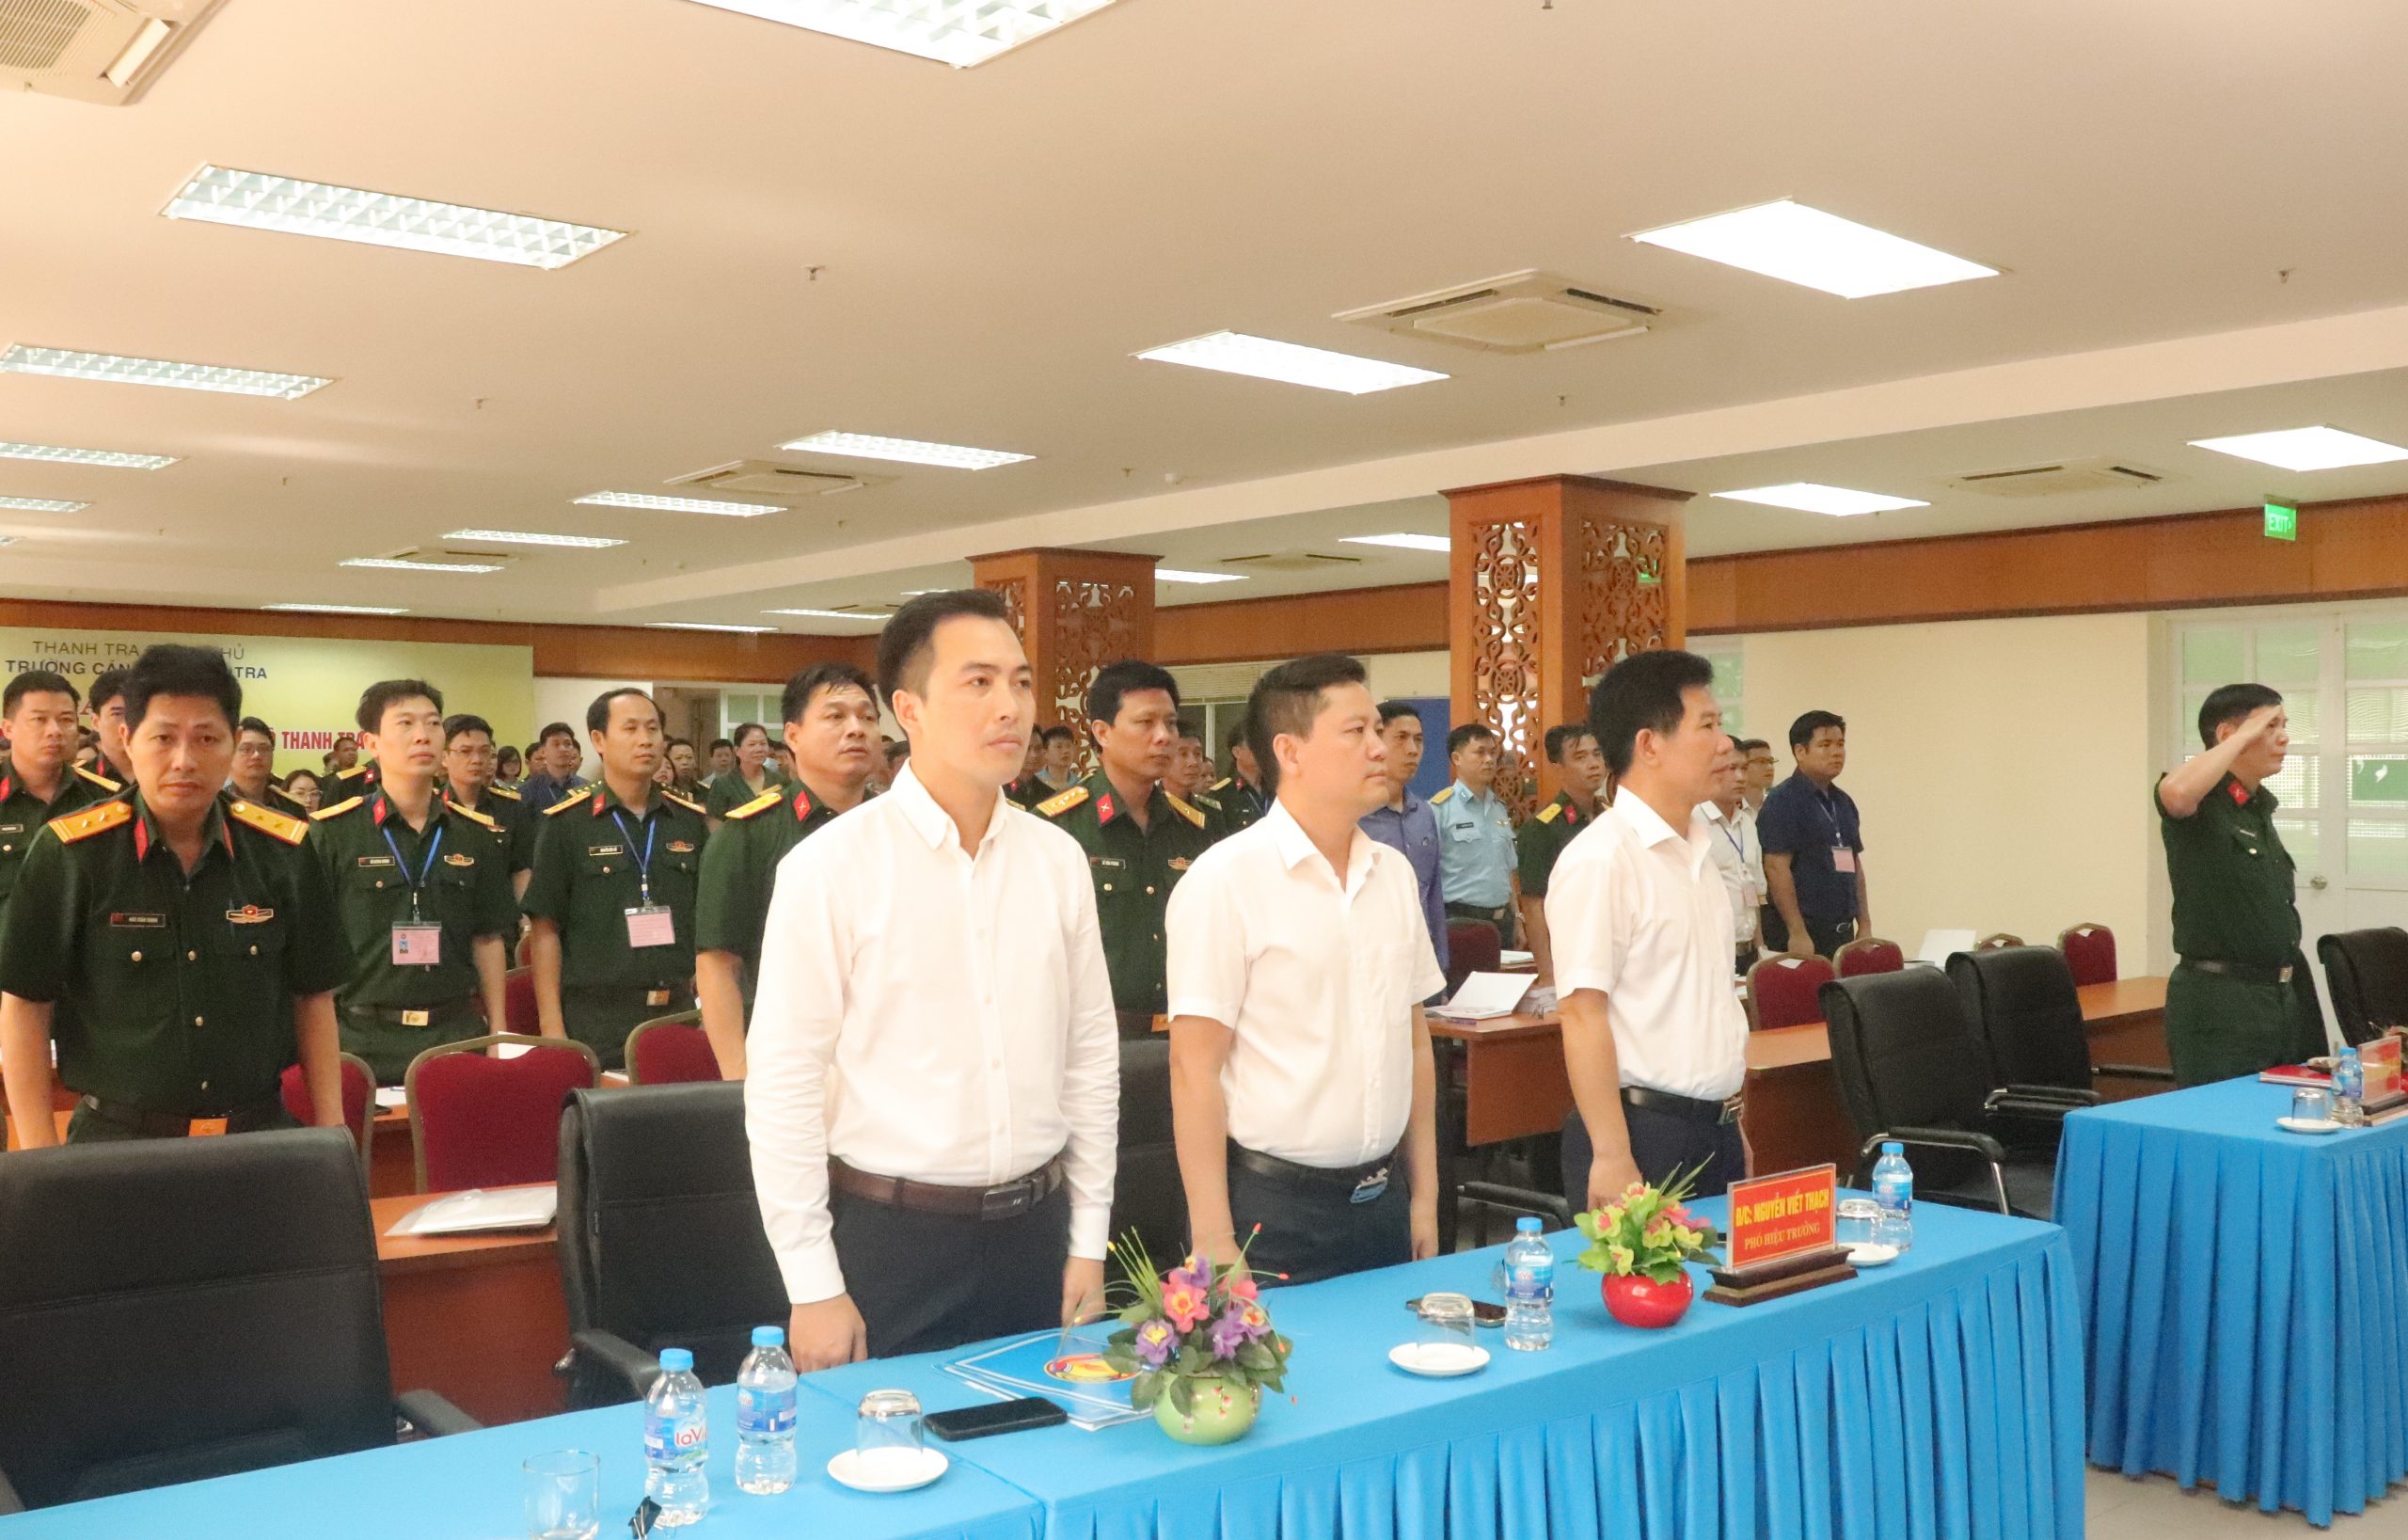 Khai giảng lớp Bồi dưỡng nghiệp vụ thanh tra viên K07-2023 cho cơ quan Thanh tra Bộ Quốc Phòng và các tỉnh, thành thuộc khu vực phía Bắc